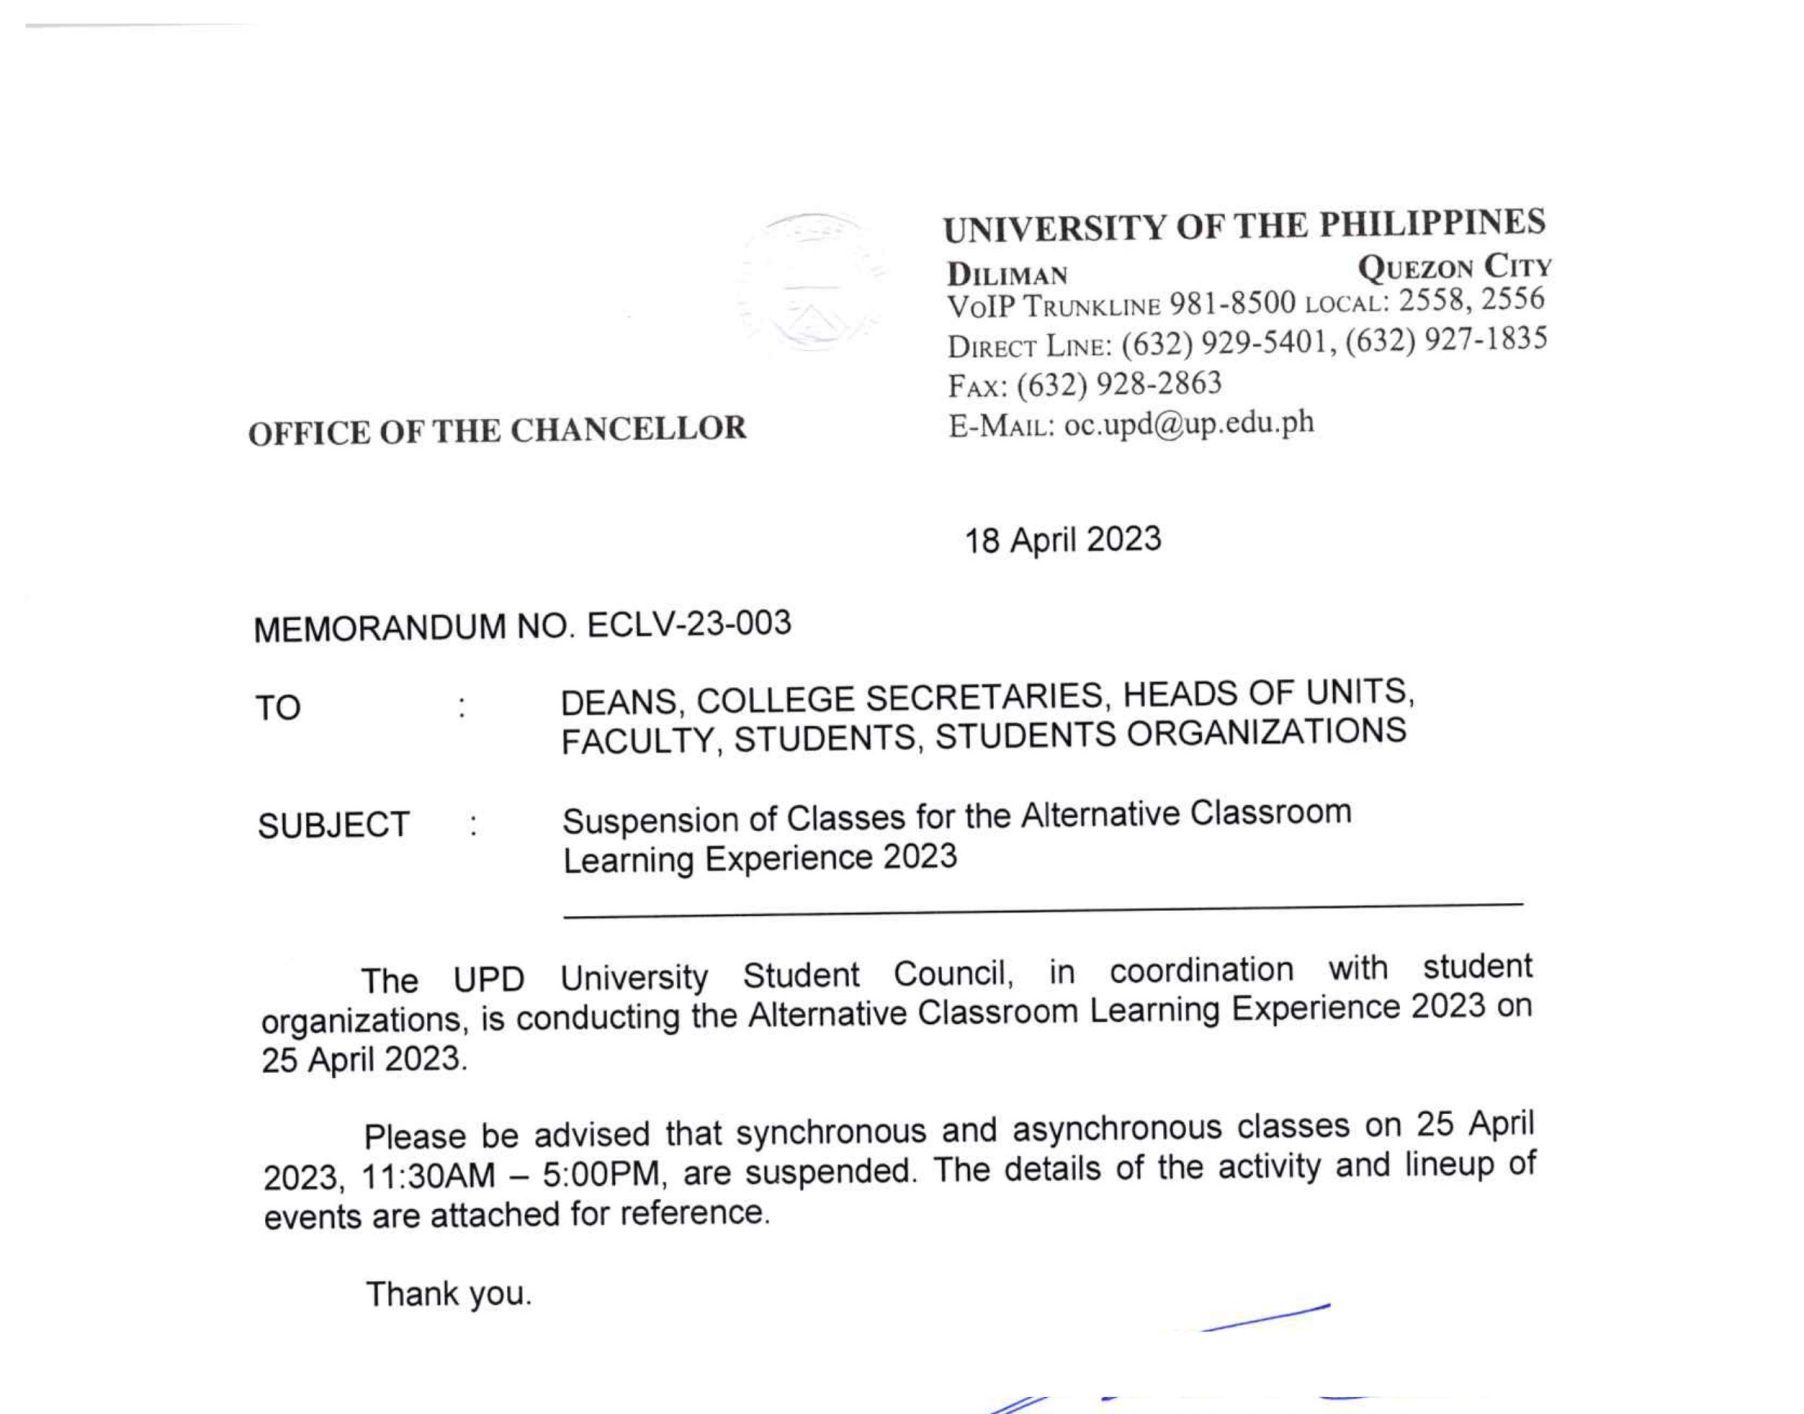 Memorandum No. ECLV-23-003: Suspension of Classes for the